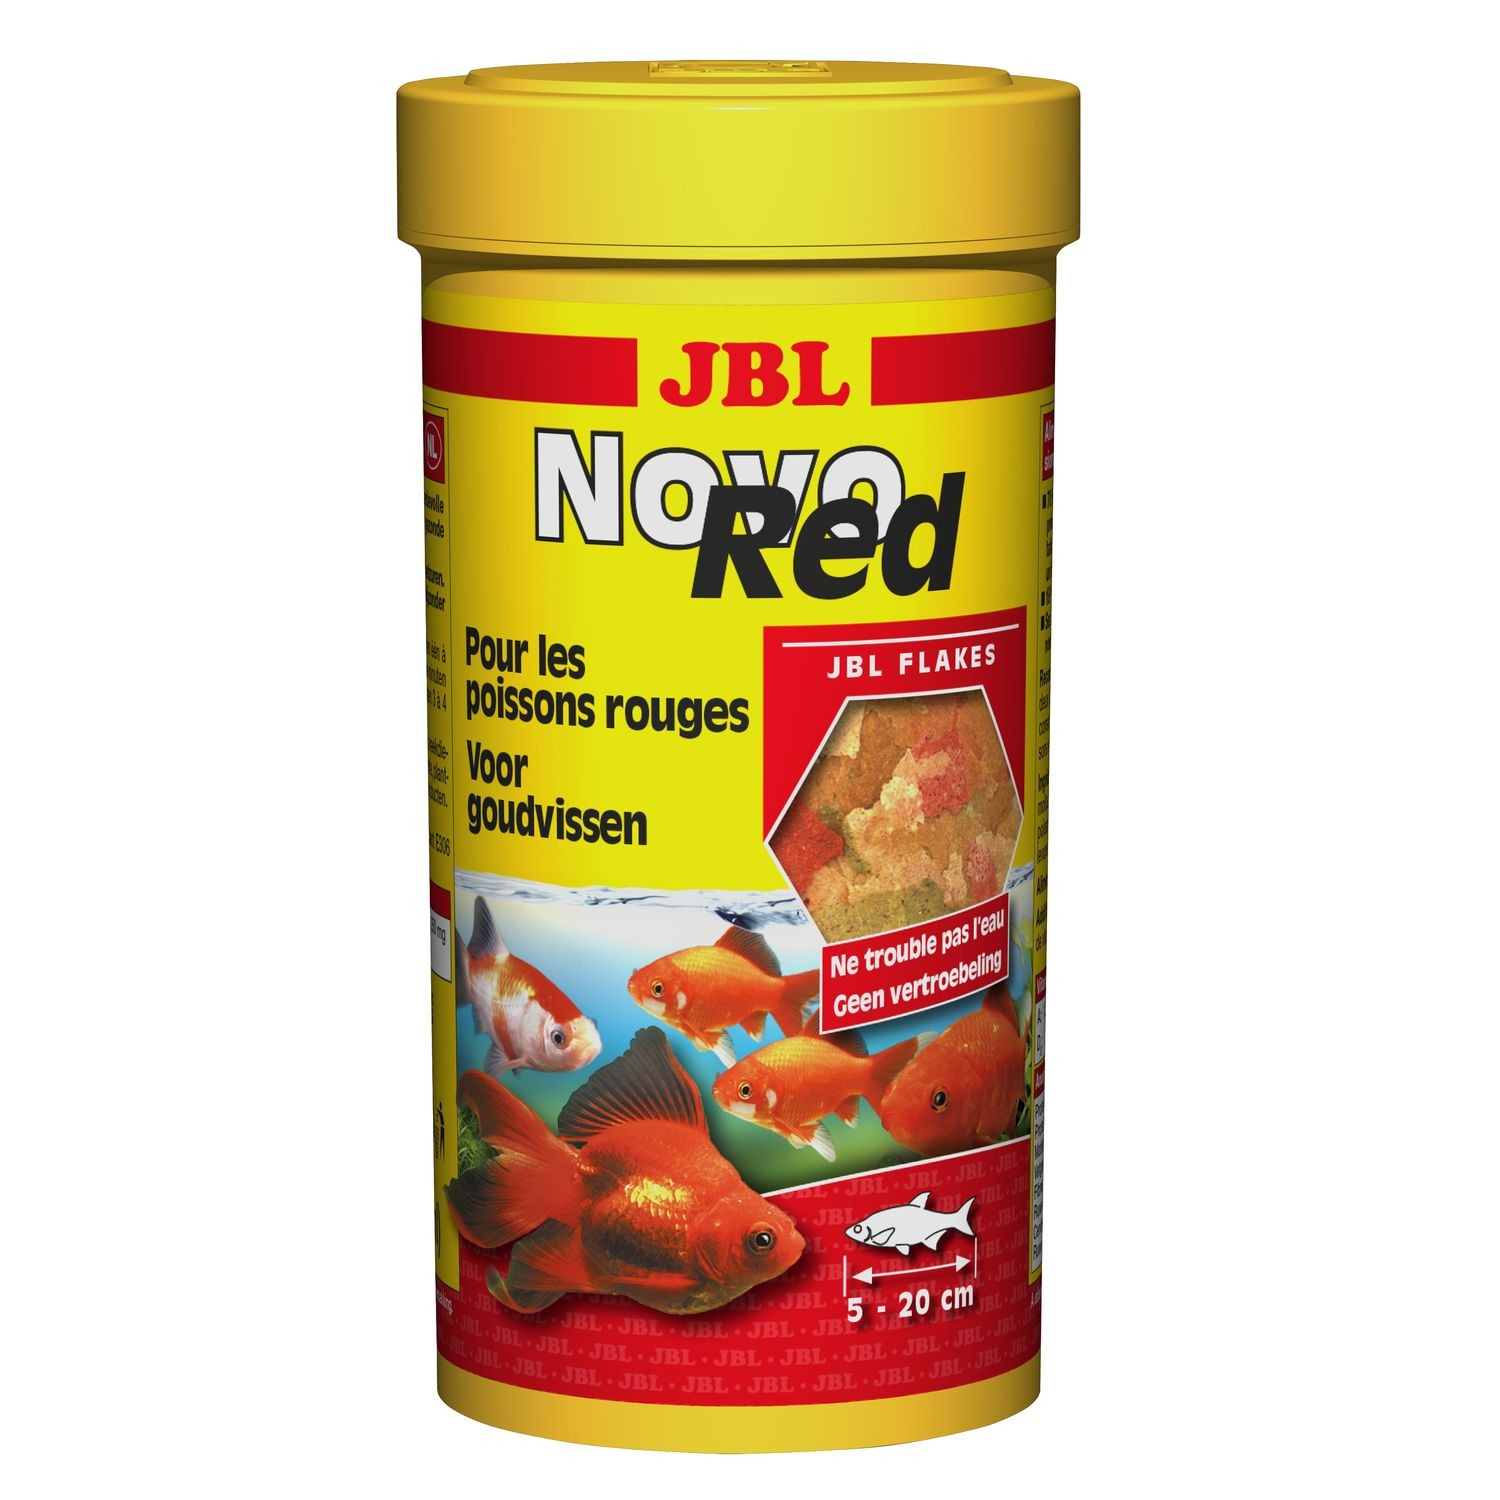 JBL Novo Red Alimento para goldfish de 8-20 cm